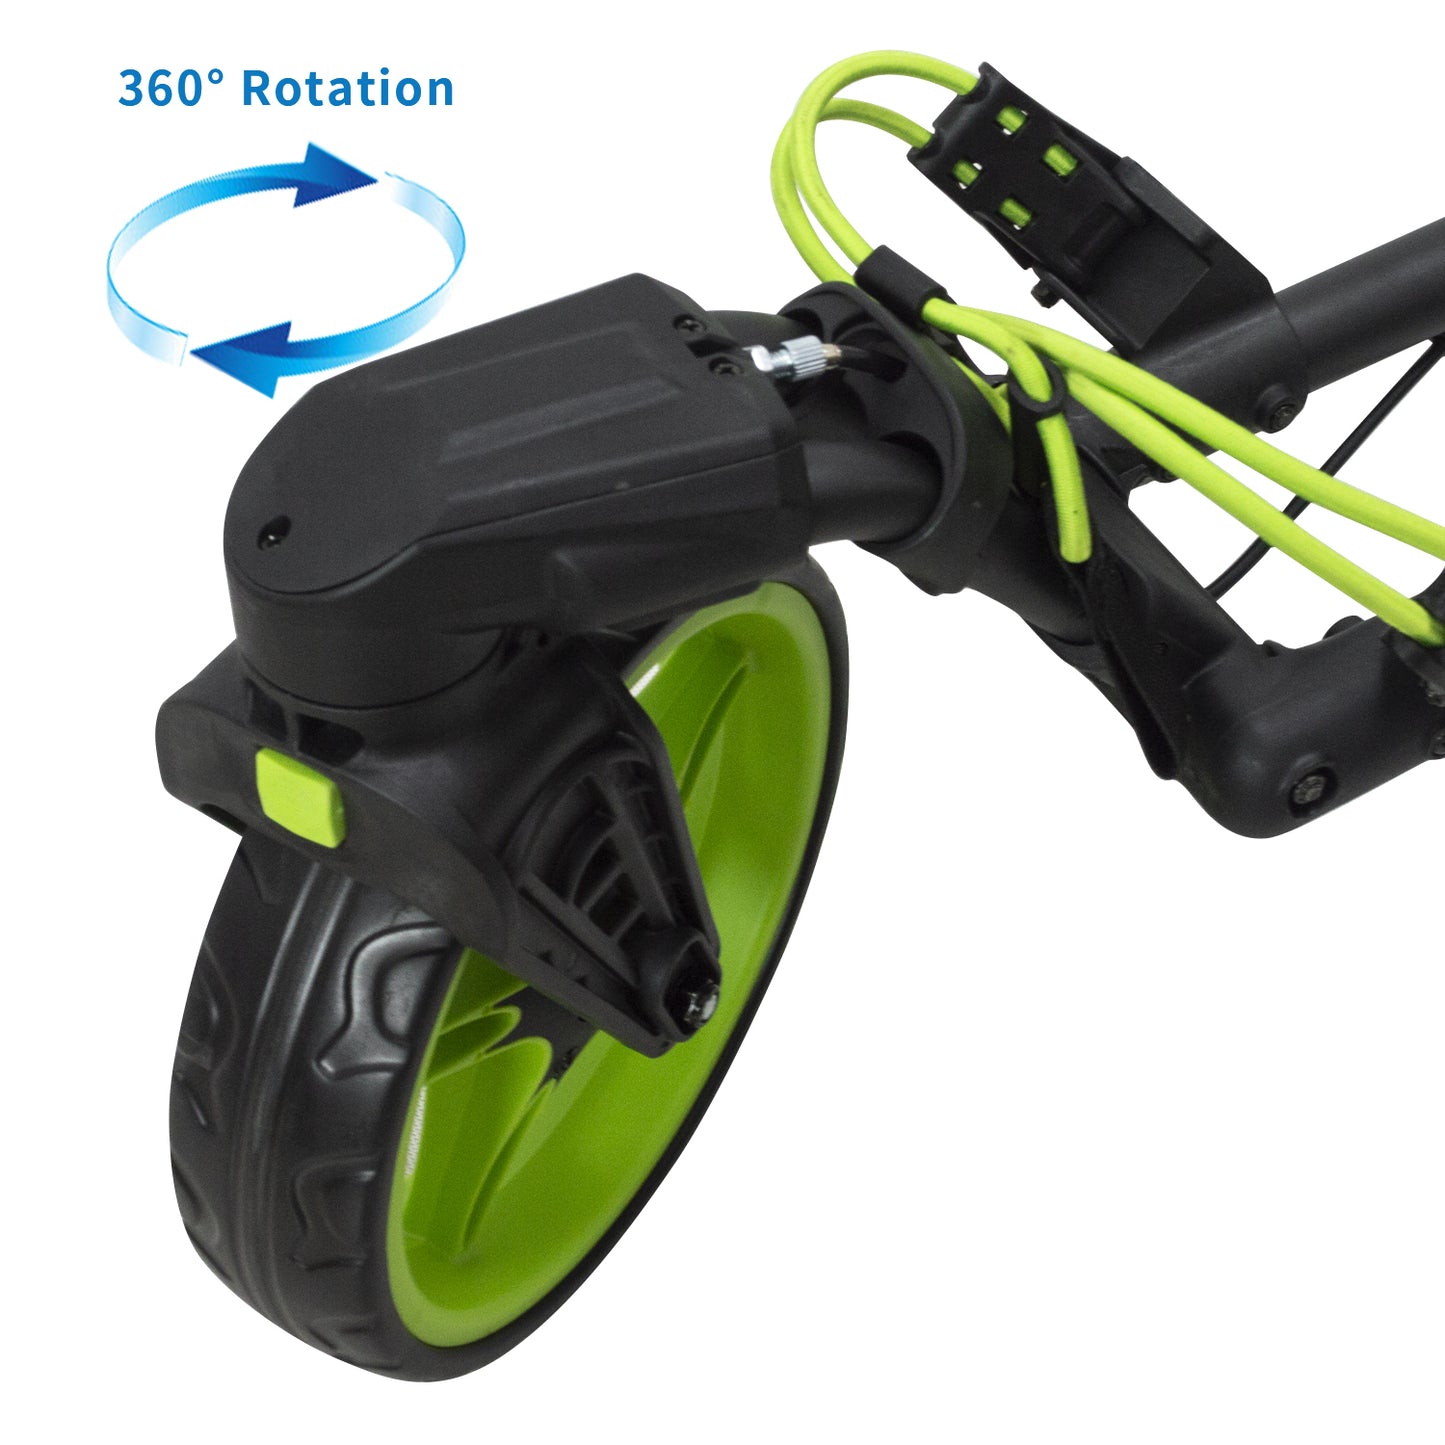 360 Swivel front wheel golf push trolley